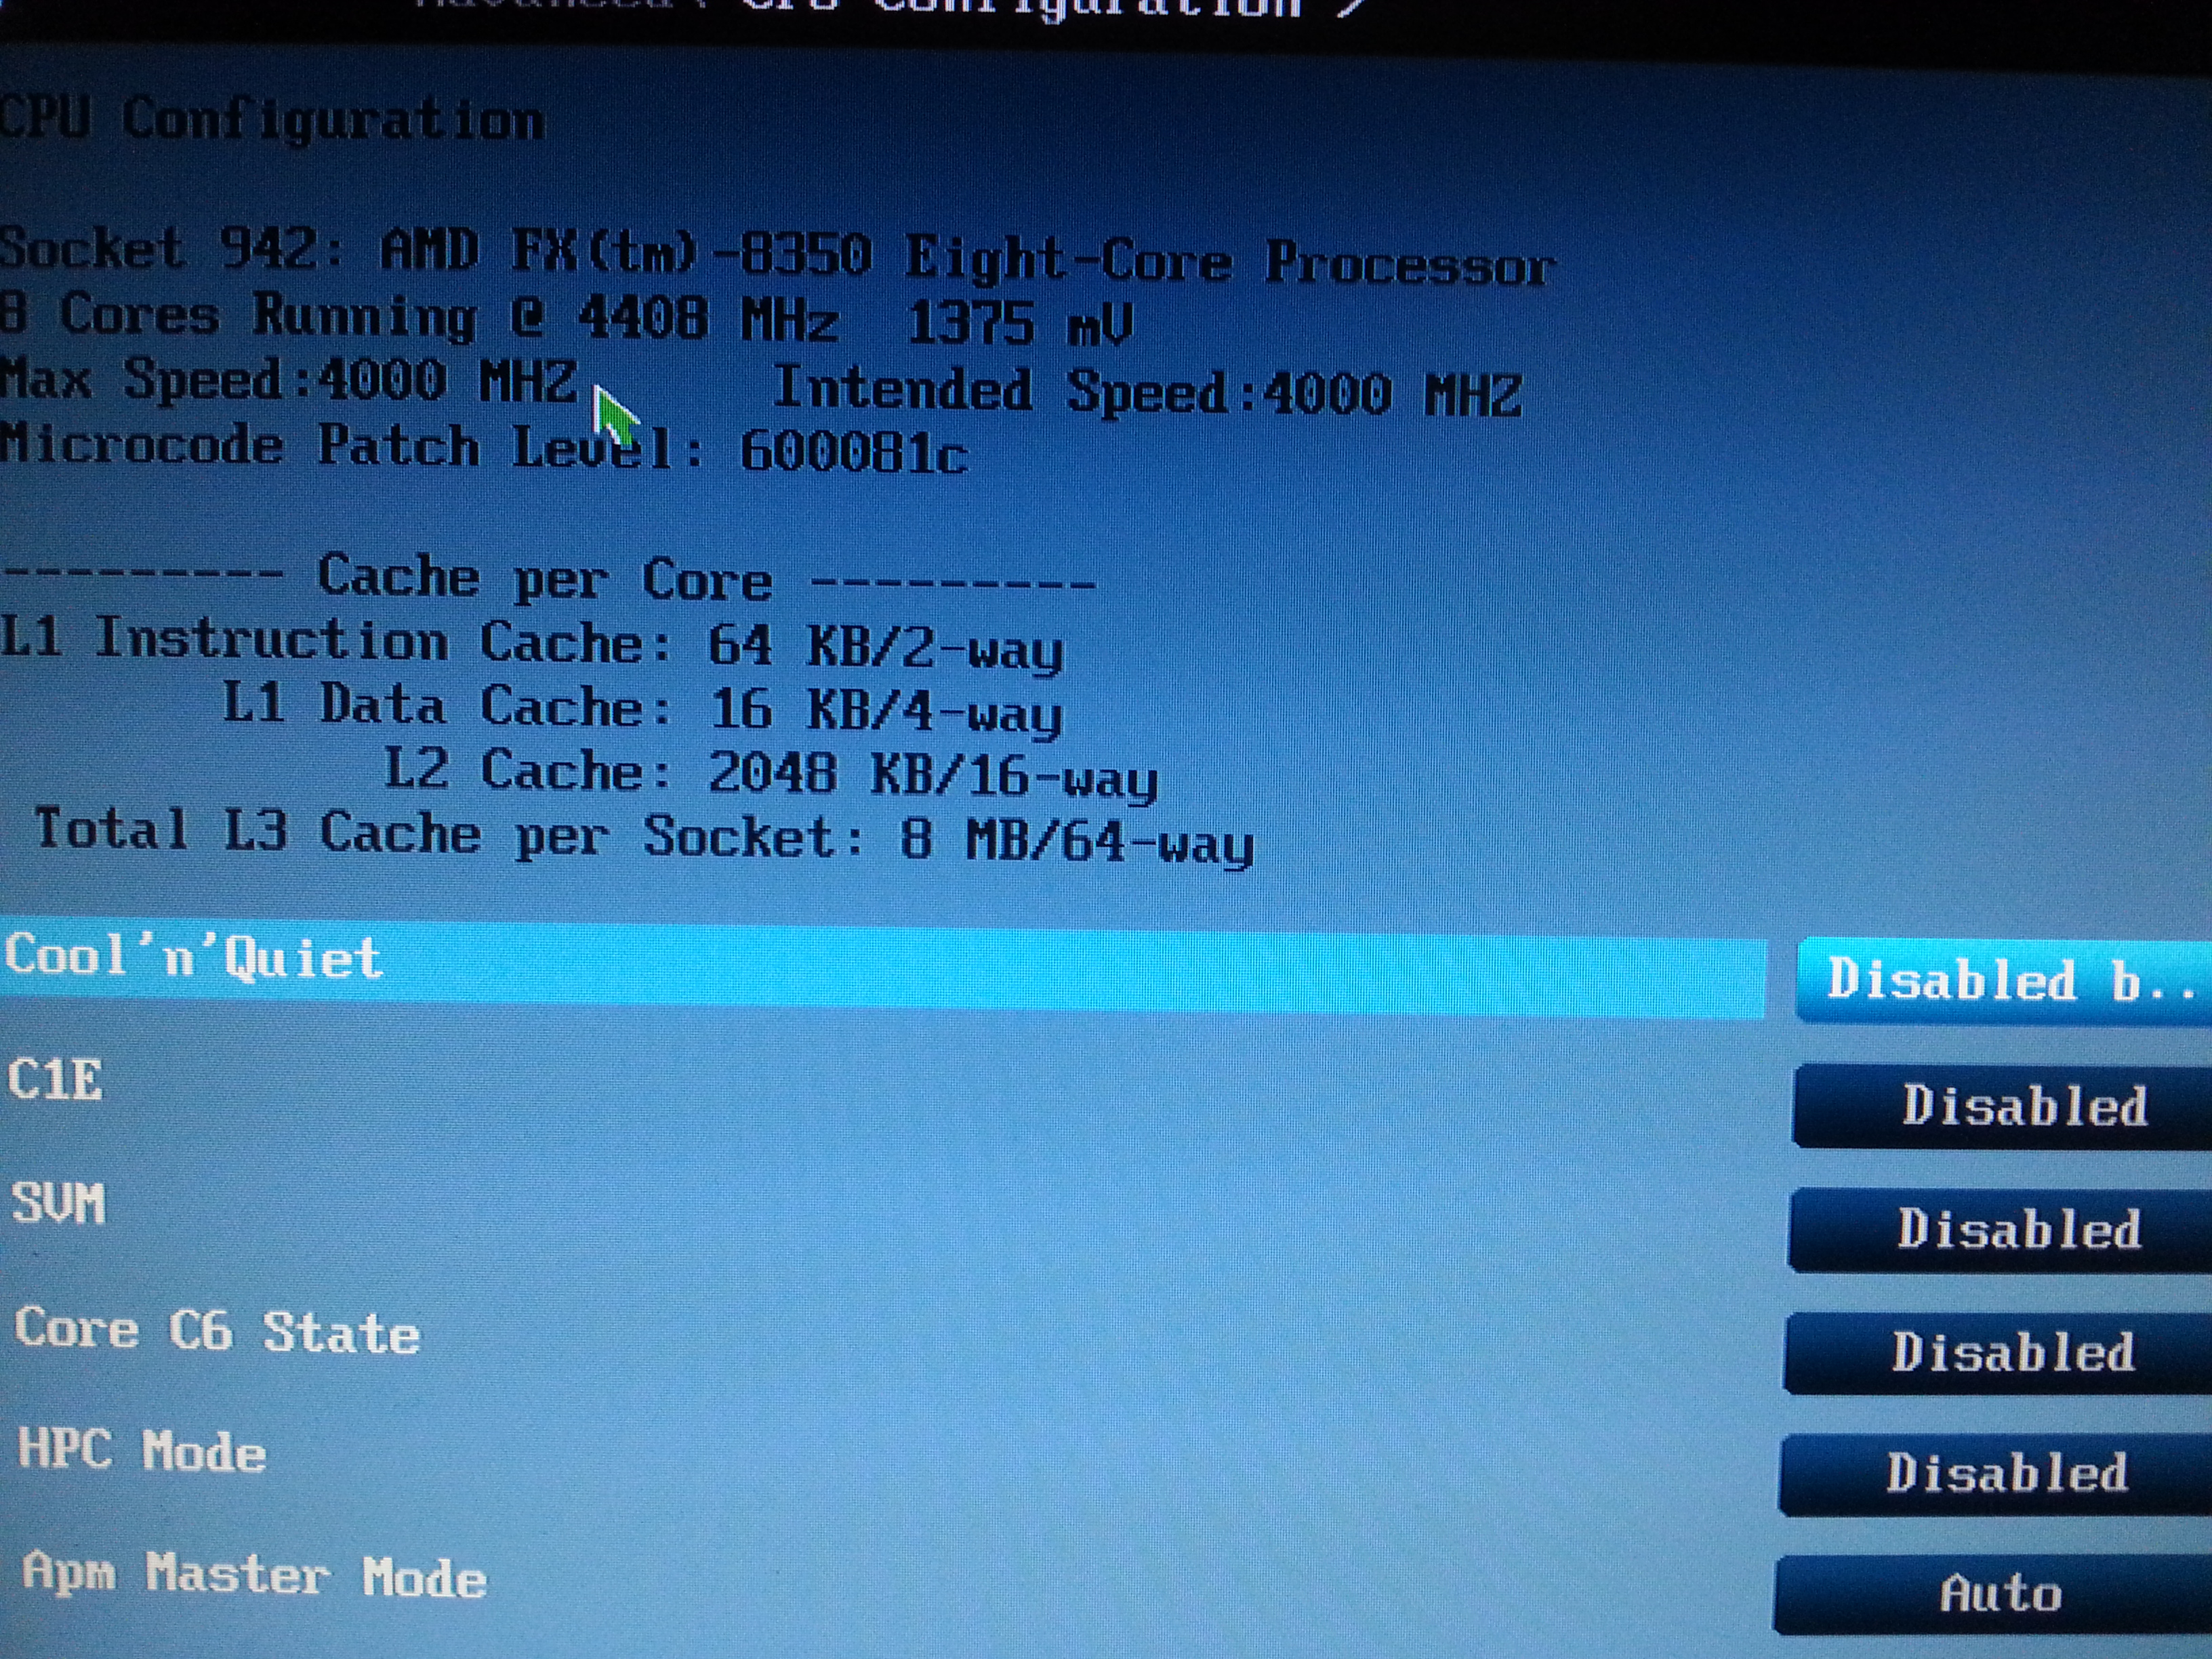  AMD FX X8 8350 OC Yardım